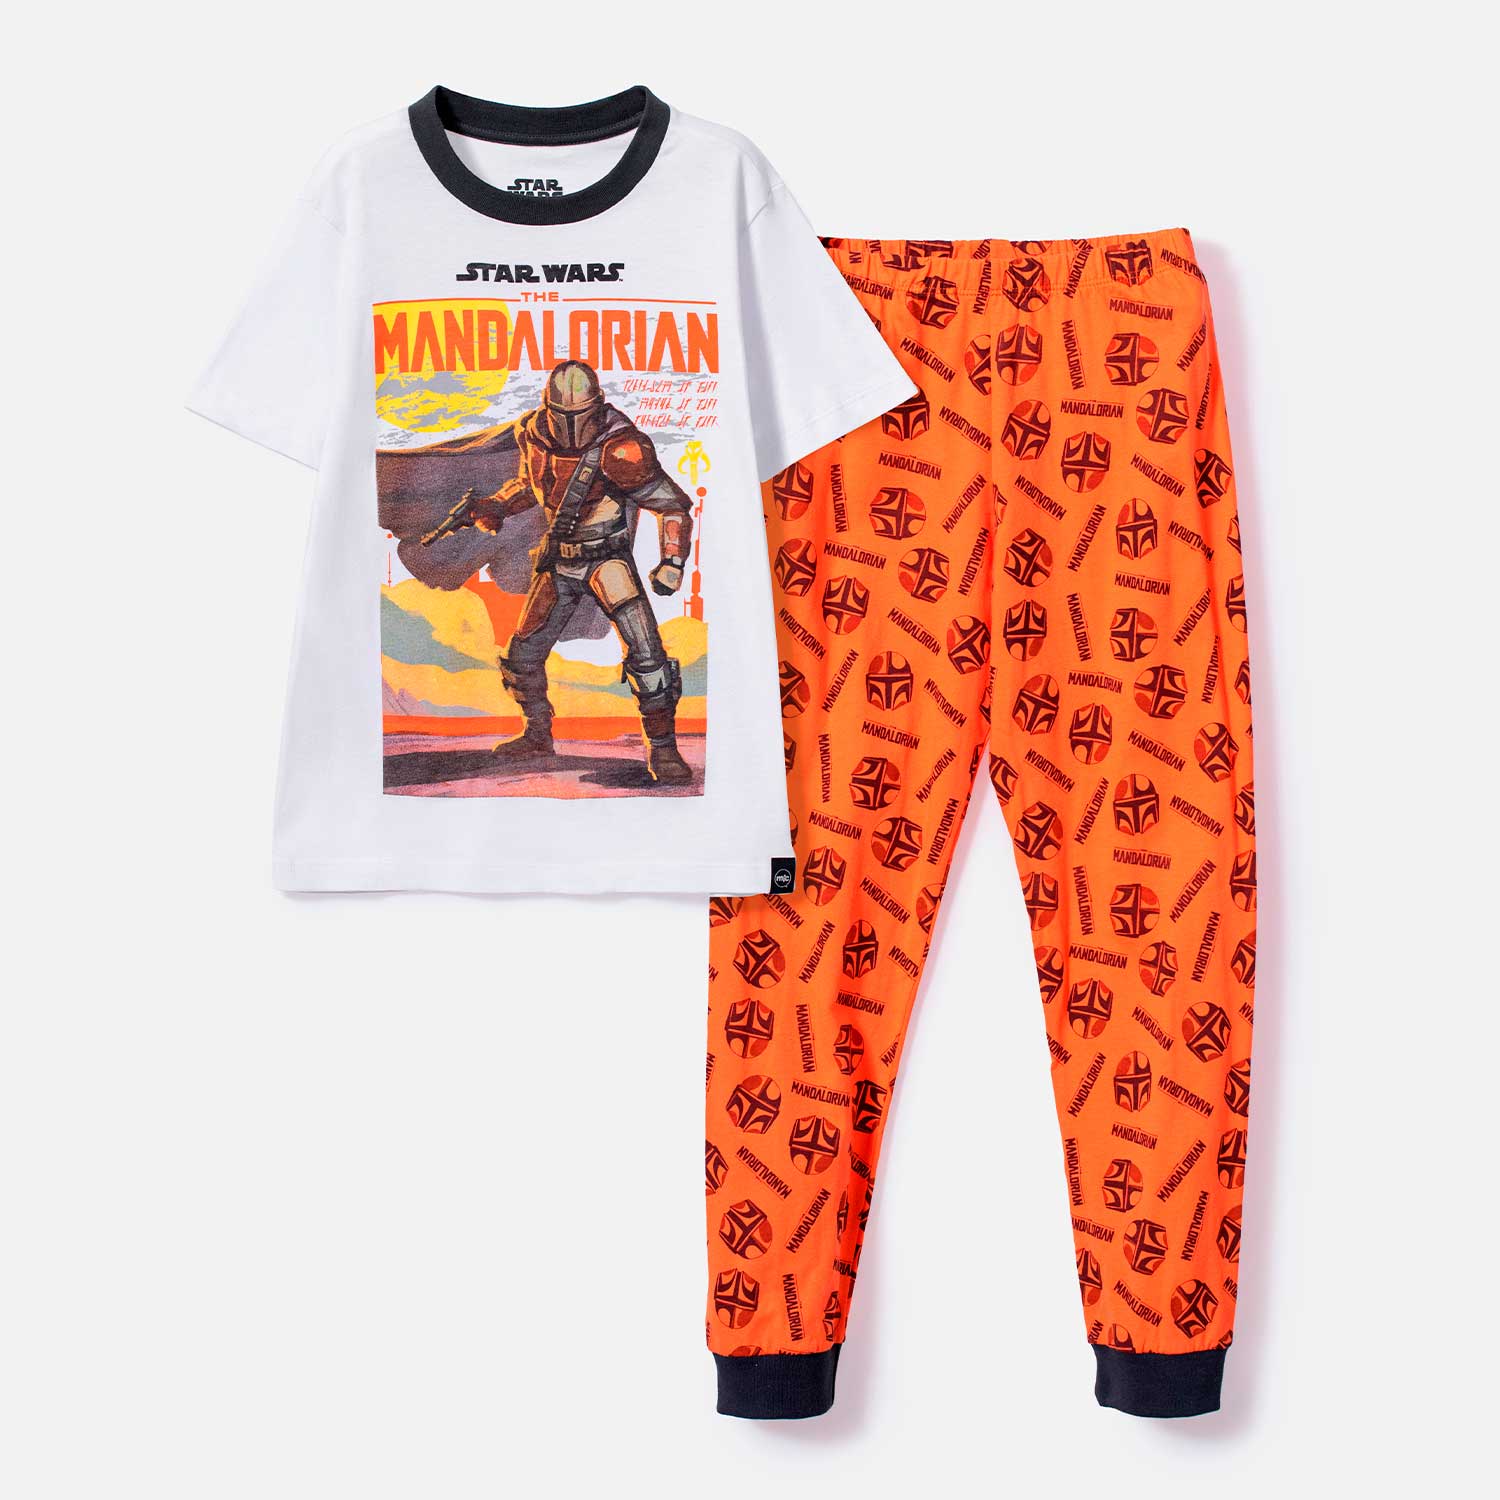 Pijama de Mandalorian pantalón largo naranja para